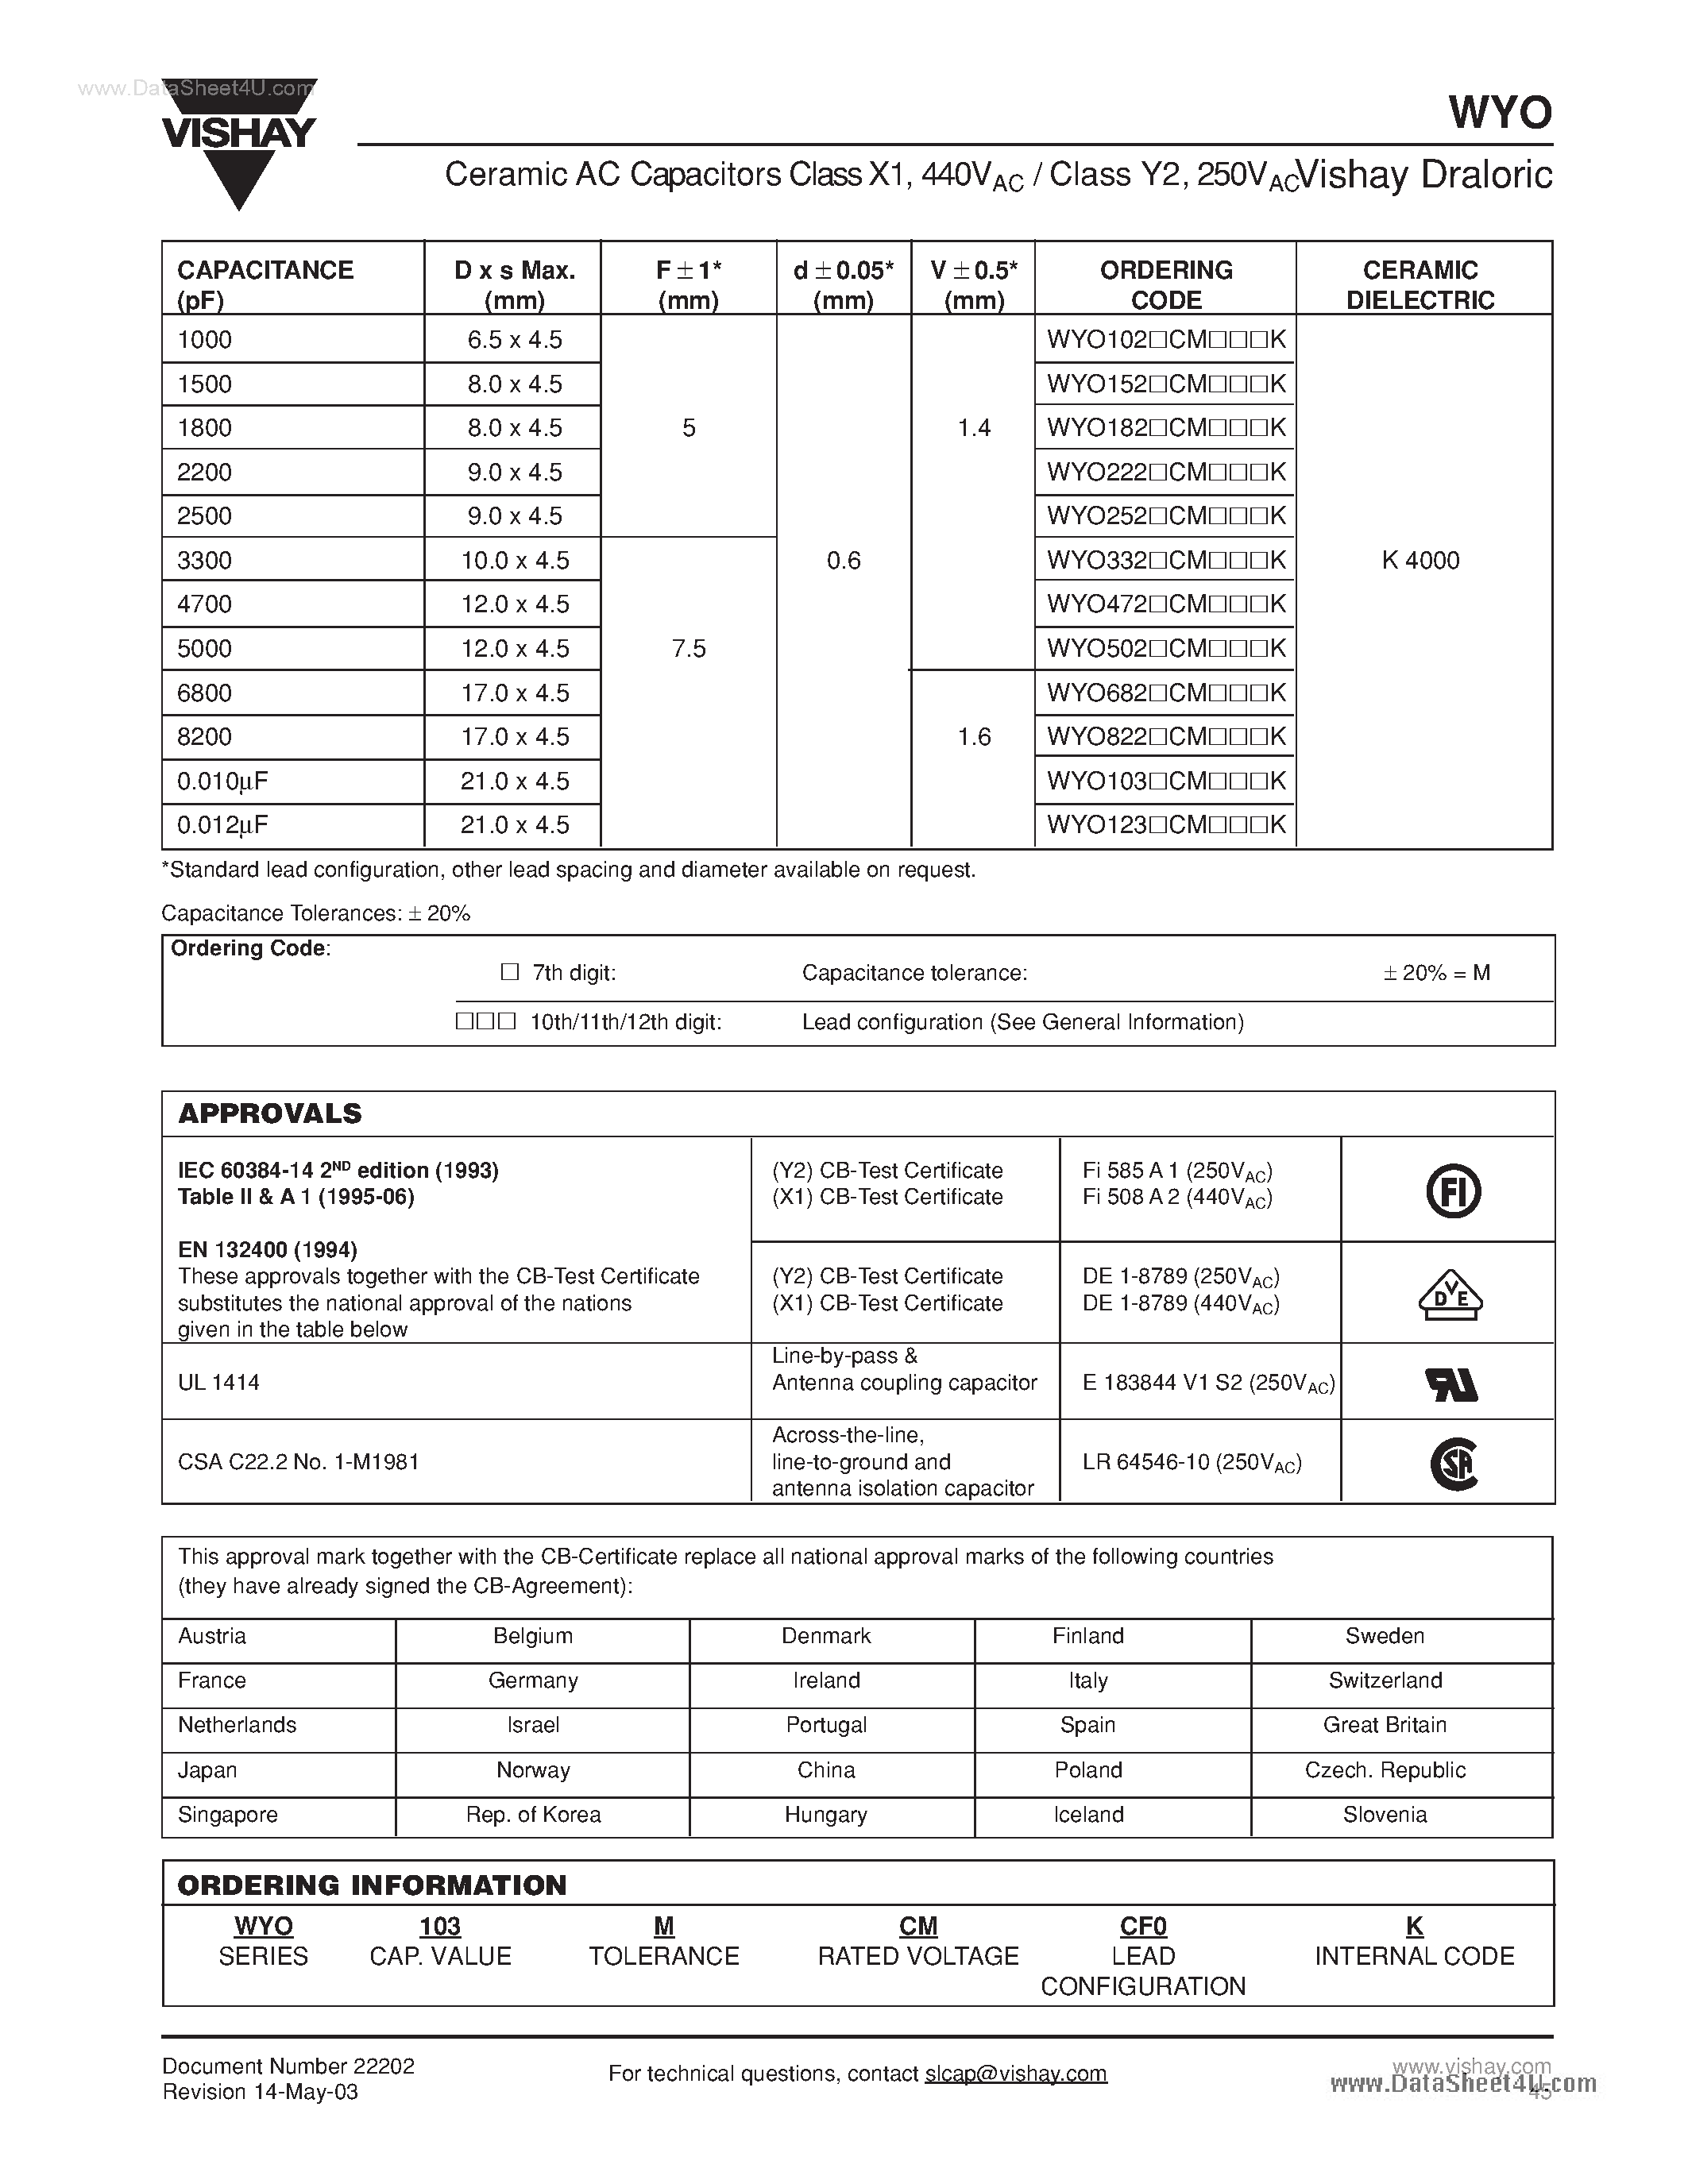 Datasheet WYO102CMxxxK - (WYOxxxCMxxxK) Ceramic ac Capacitors page 2